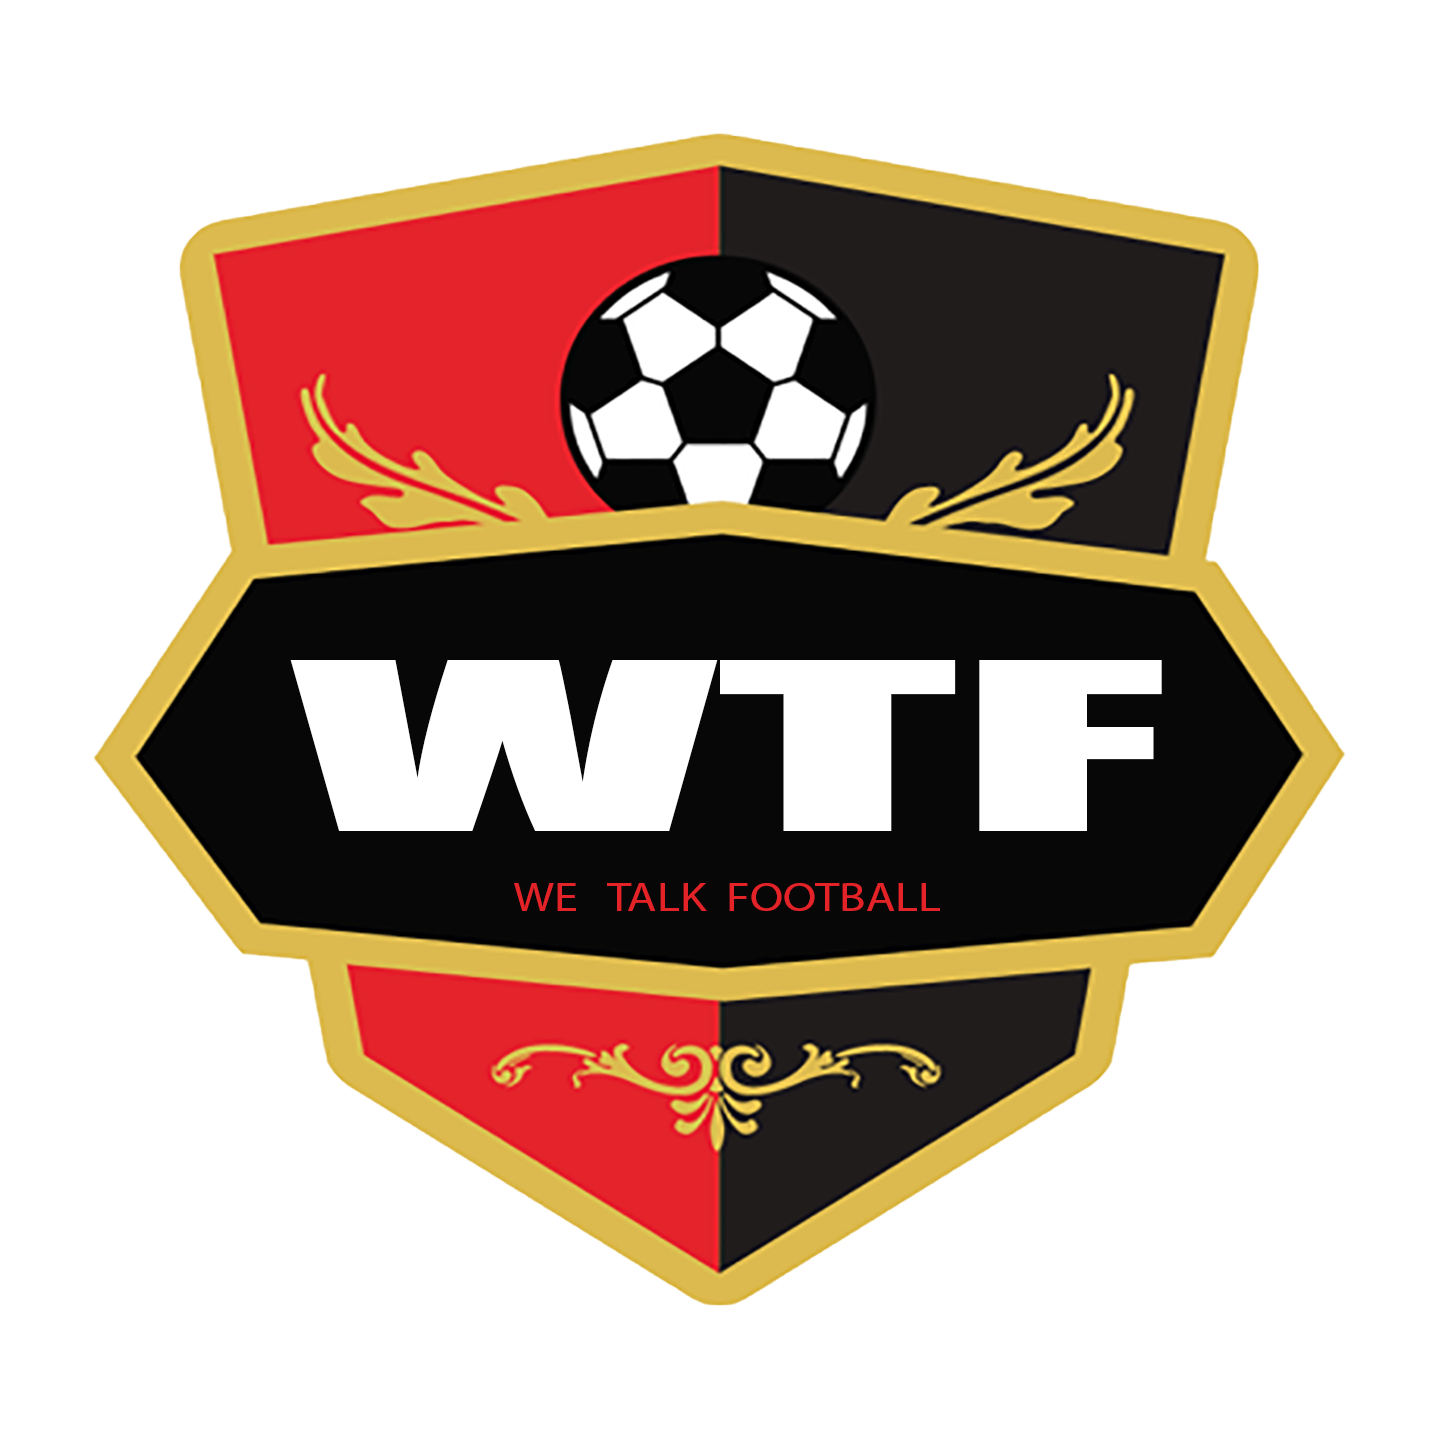 WTF logo - Wallpaper Cave